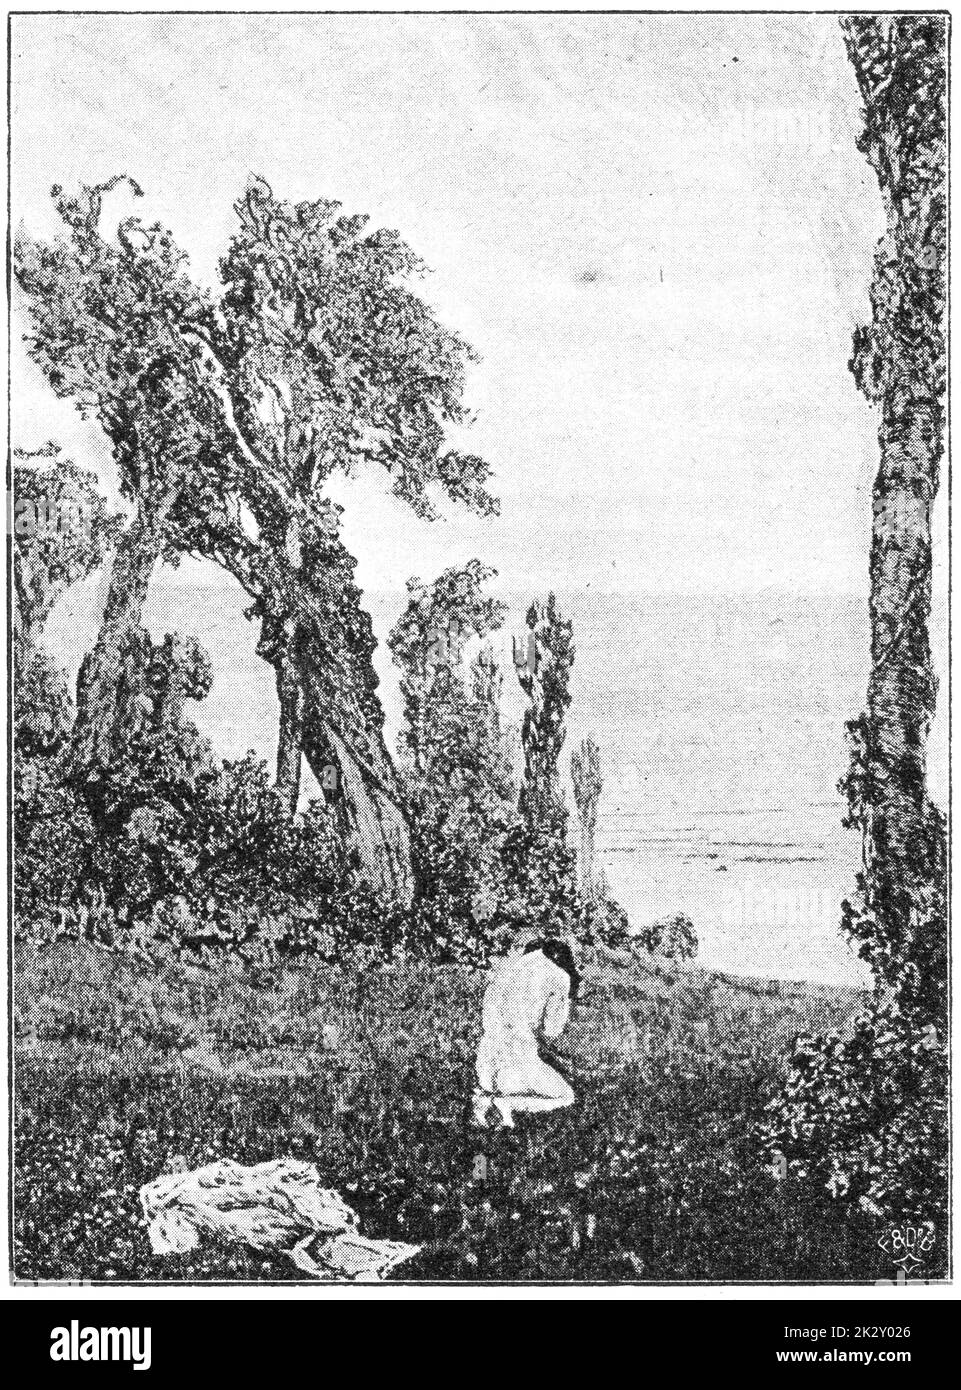 "Von der Schönheit" von einem deutschen Maler Max Klinger. Illustration des 19. Jahrhunderts. Weißer Hintergrund. Stockfoto